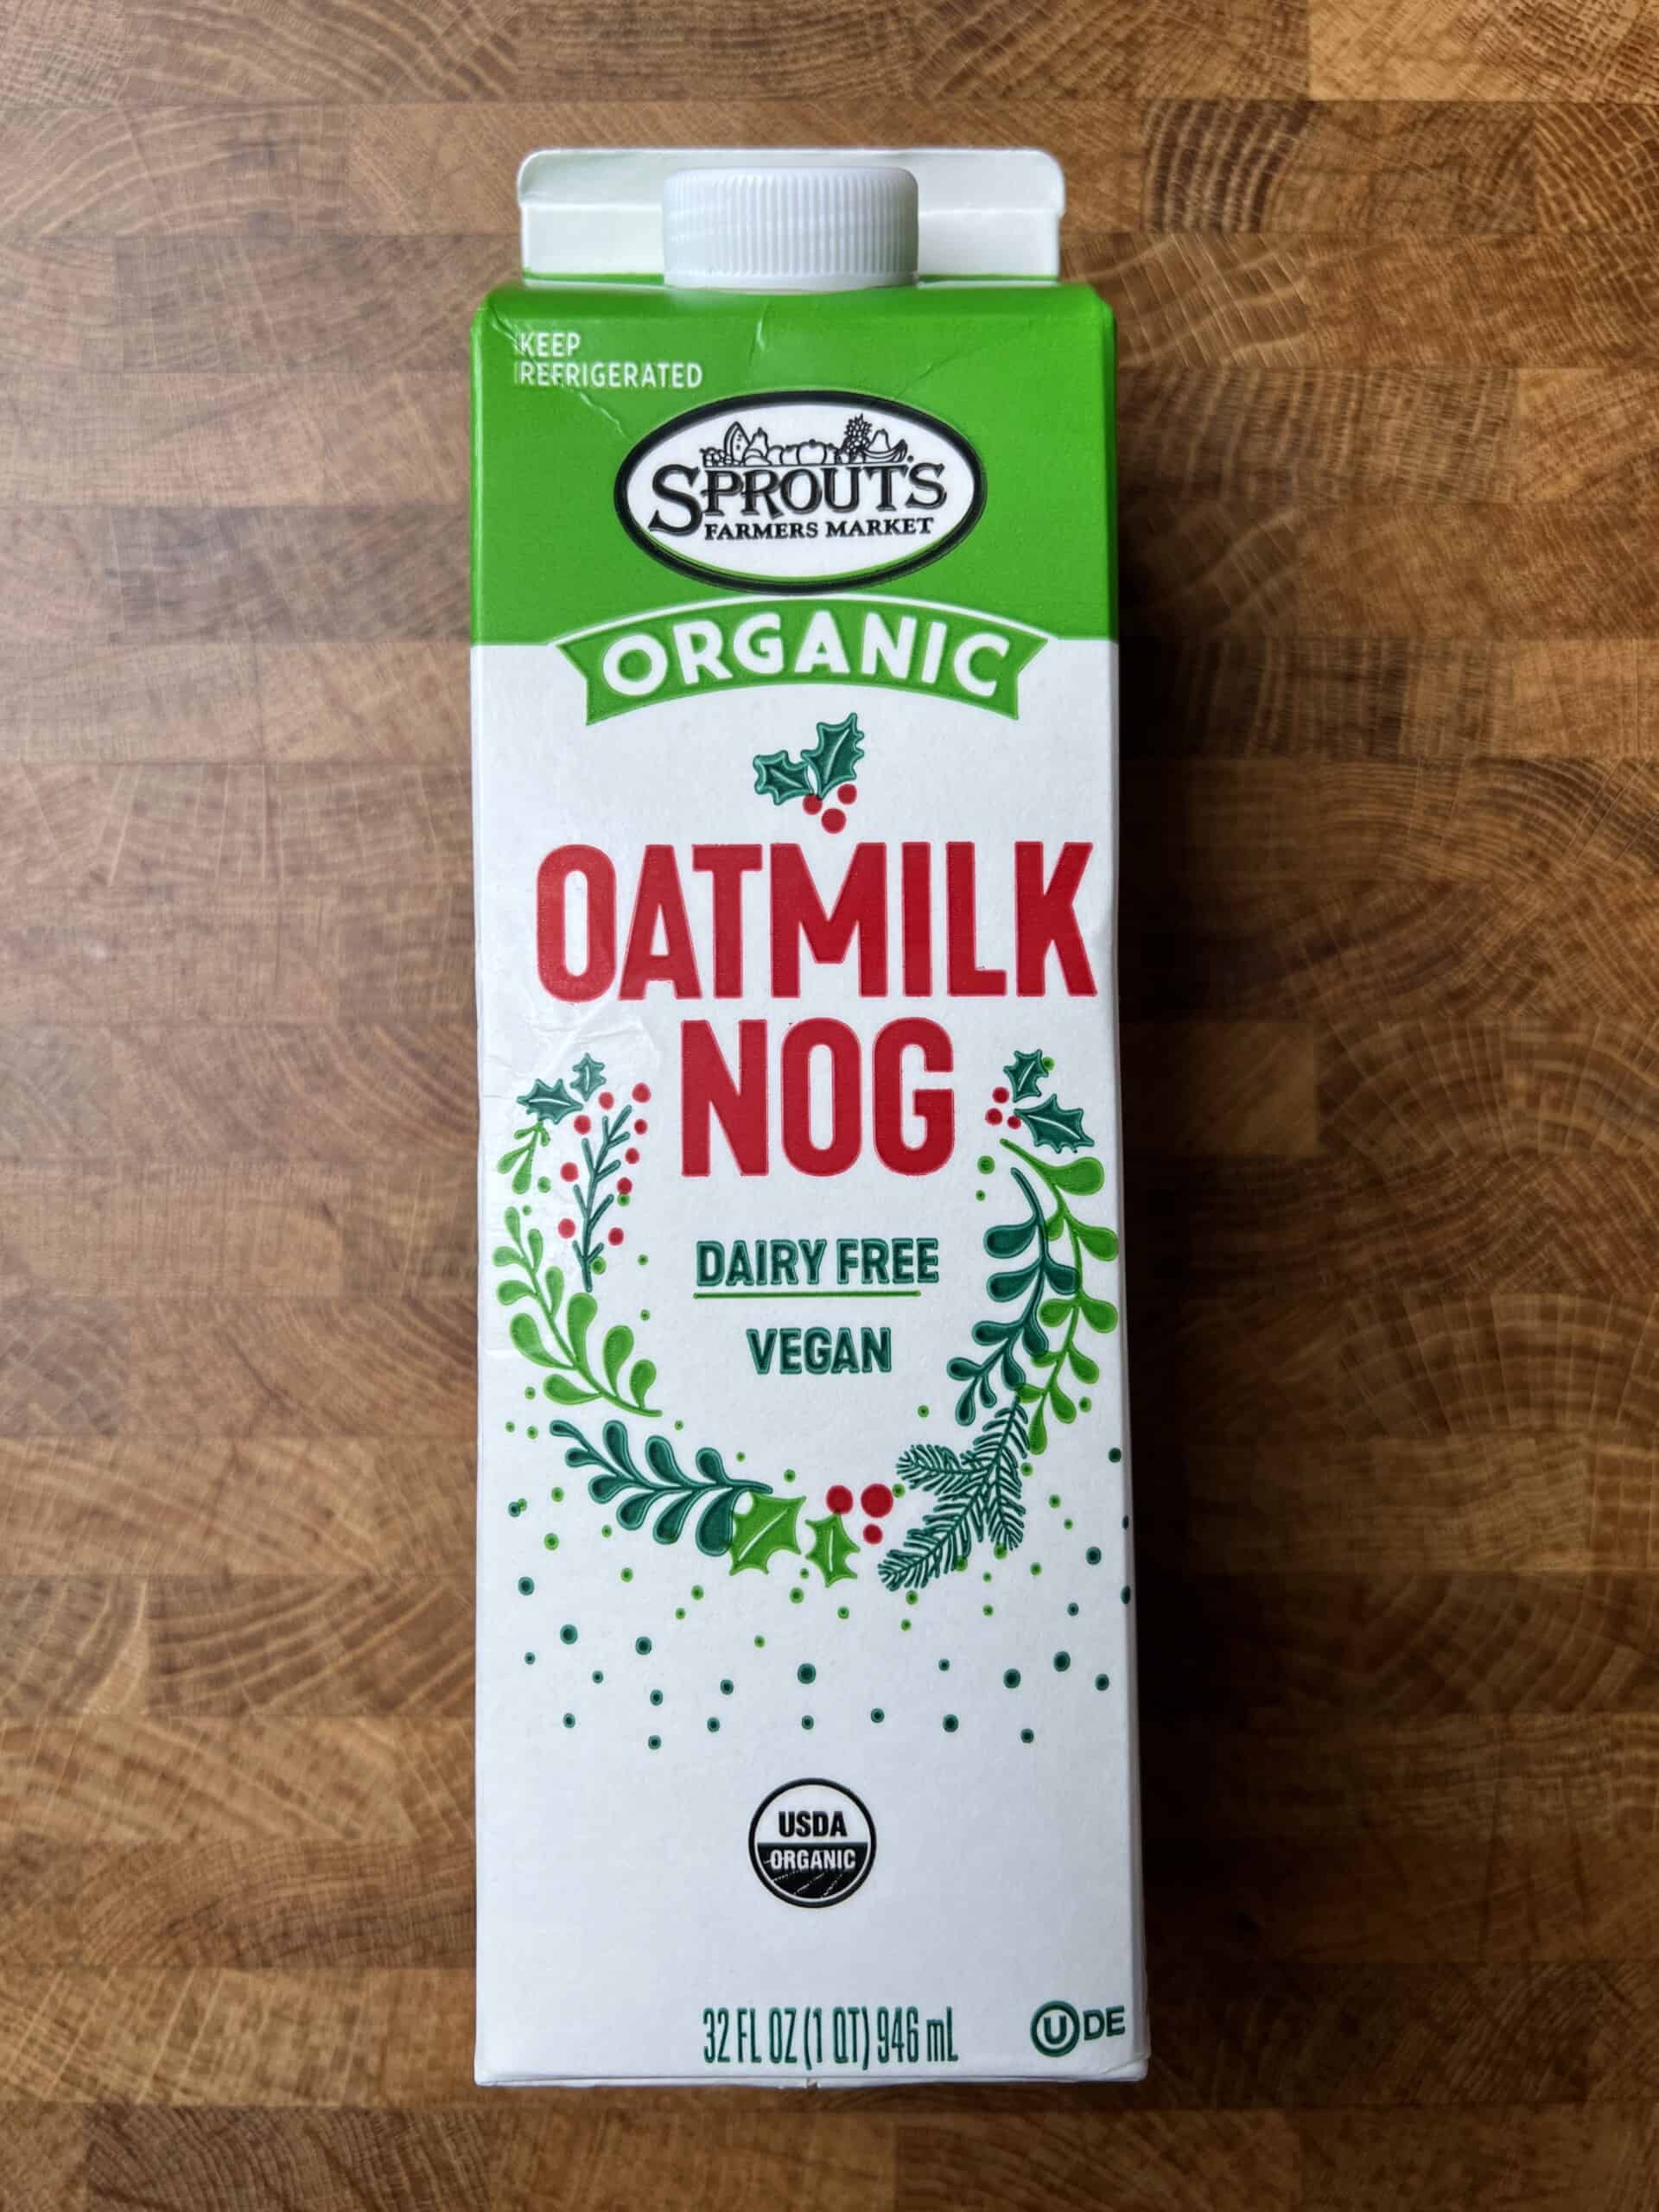 Sprouts Organic Oatmilk Nog carton.